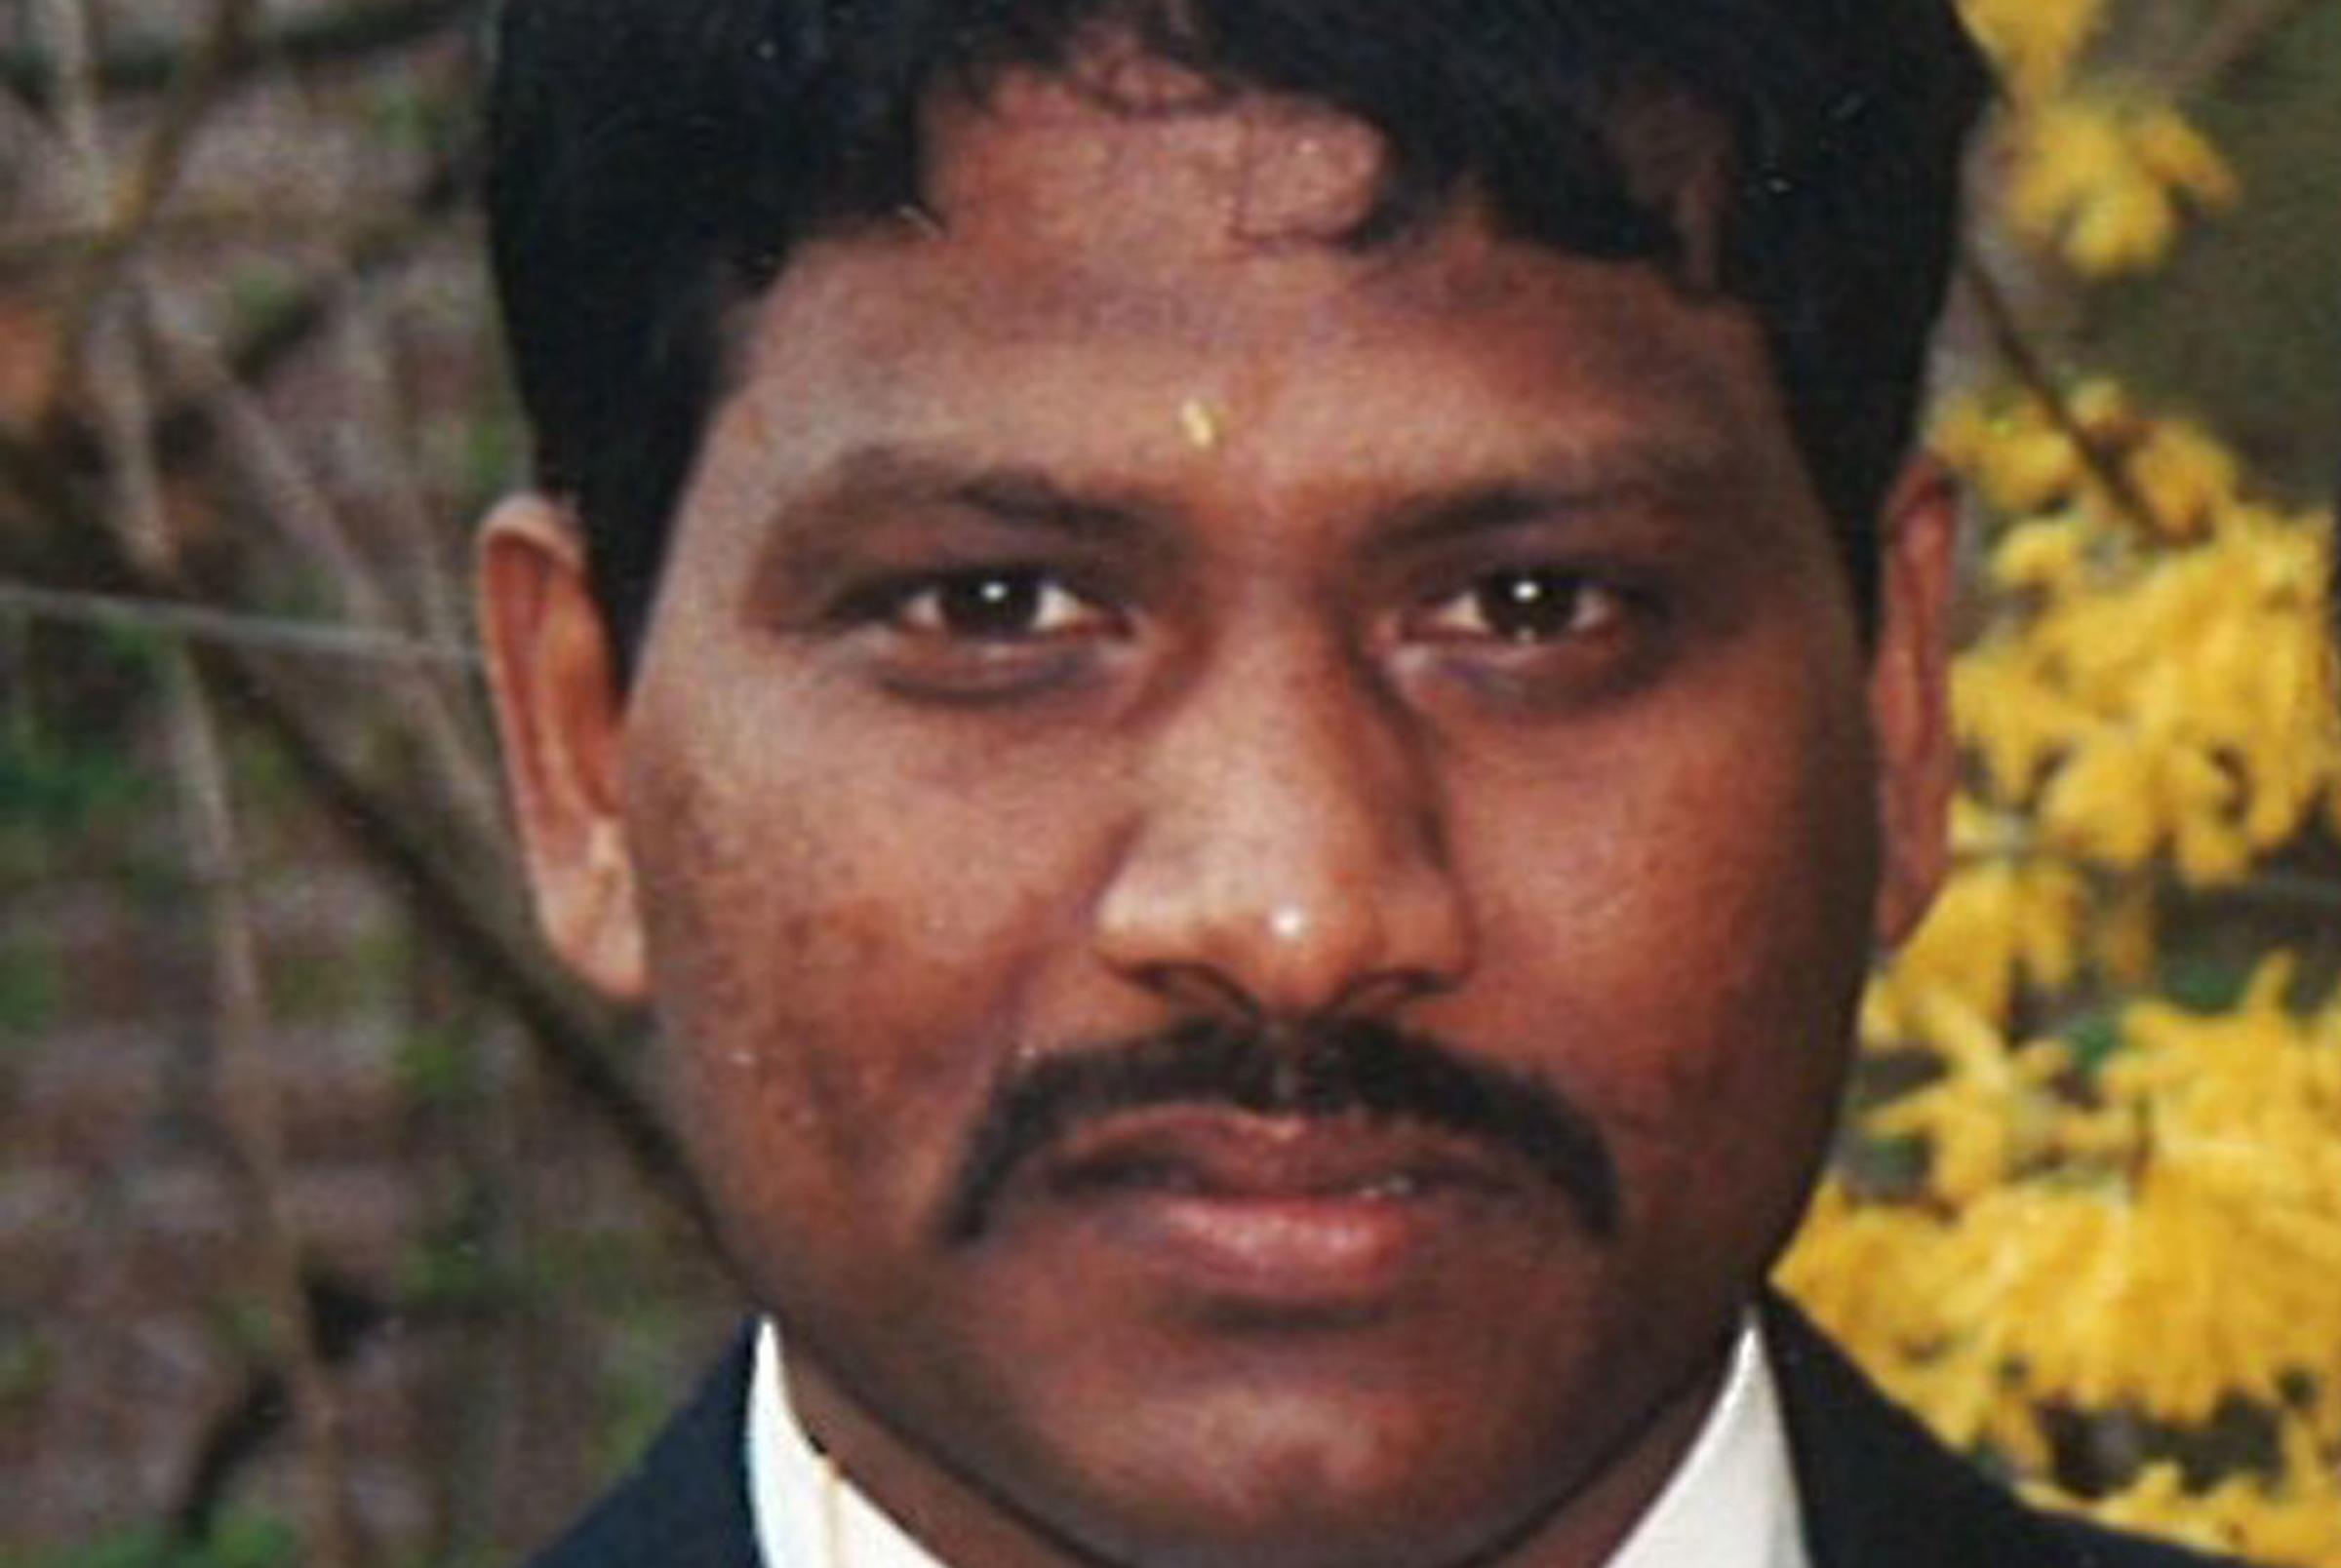 Wife of murdered Pinner shopkeeper Ravi Katharkamar speaks out